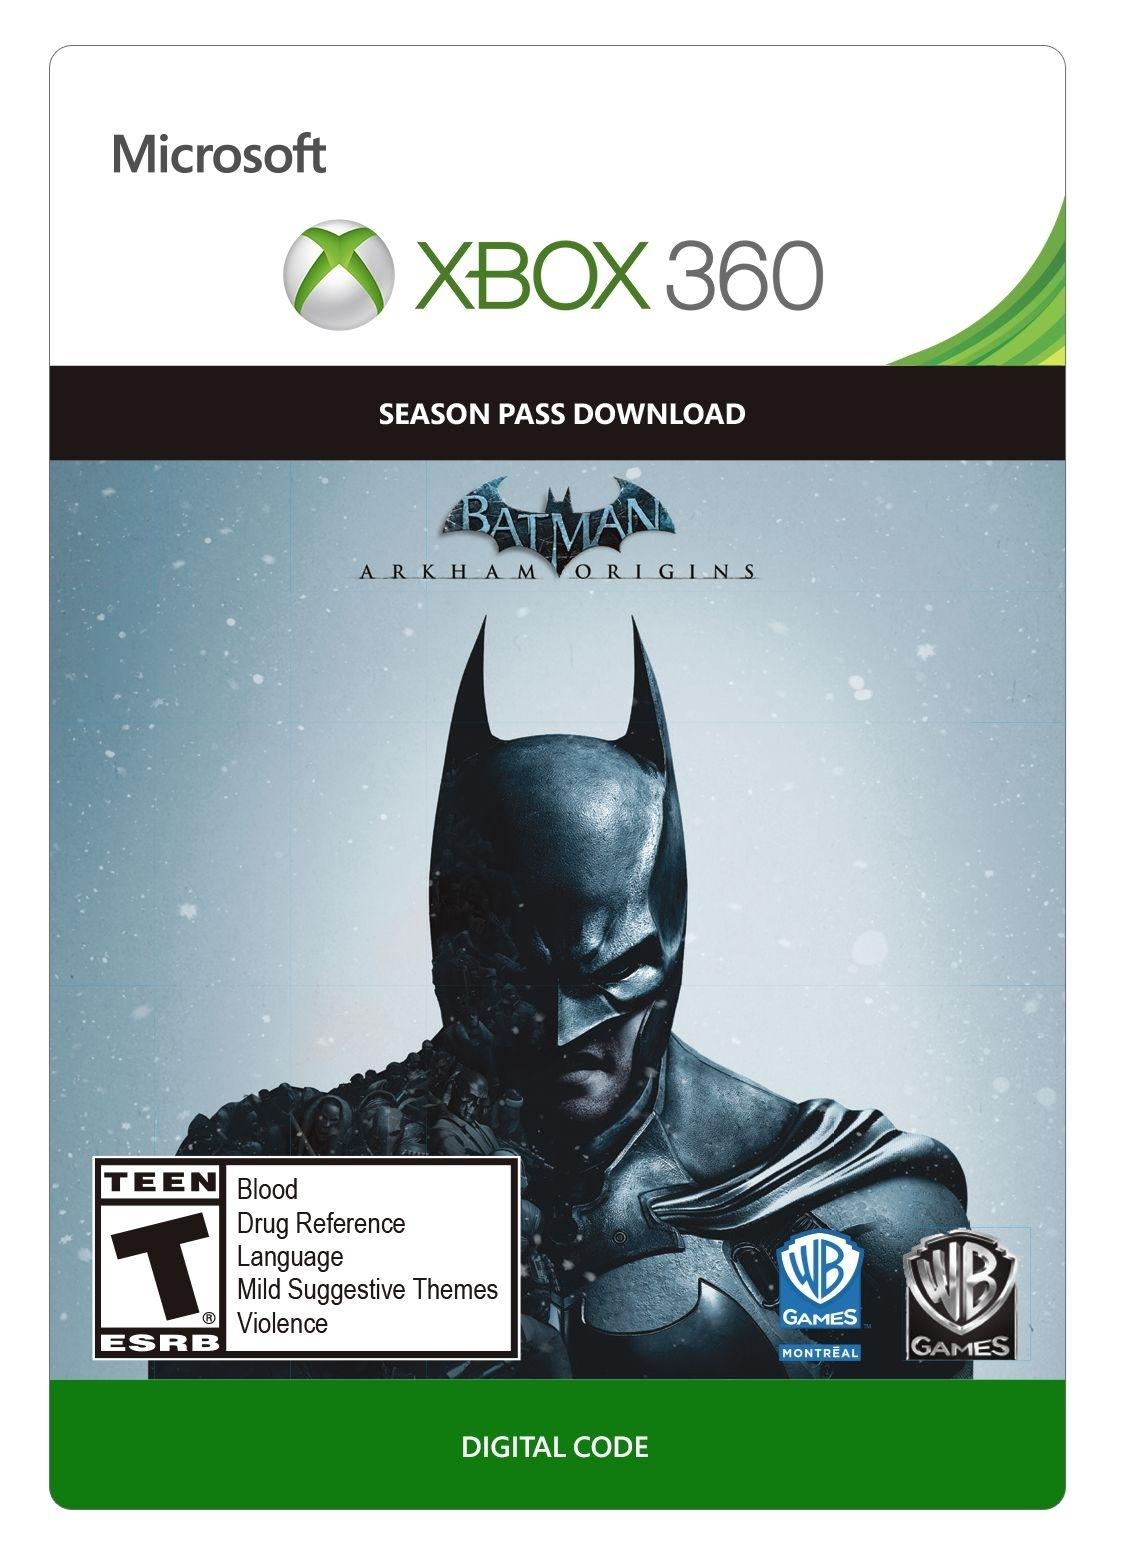 Batman: Arkham Origins Season Pass - Xbox 360 - Season Pass - Niet beschikbaar in Belgie | CCR-00027 (842846c8-2de6-40a6-9e86-d30d8bcb14cd)